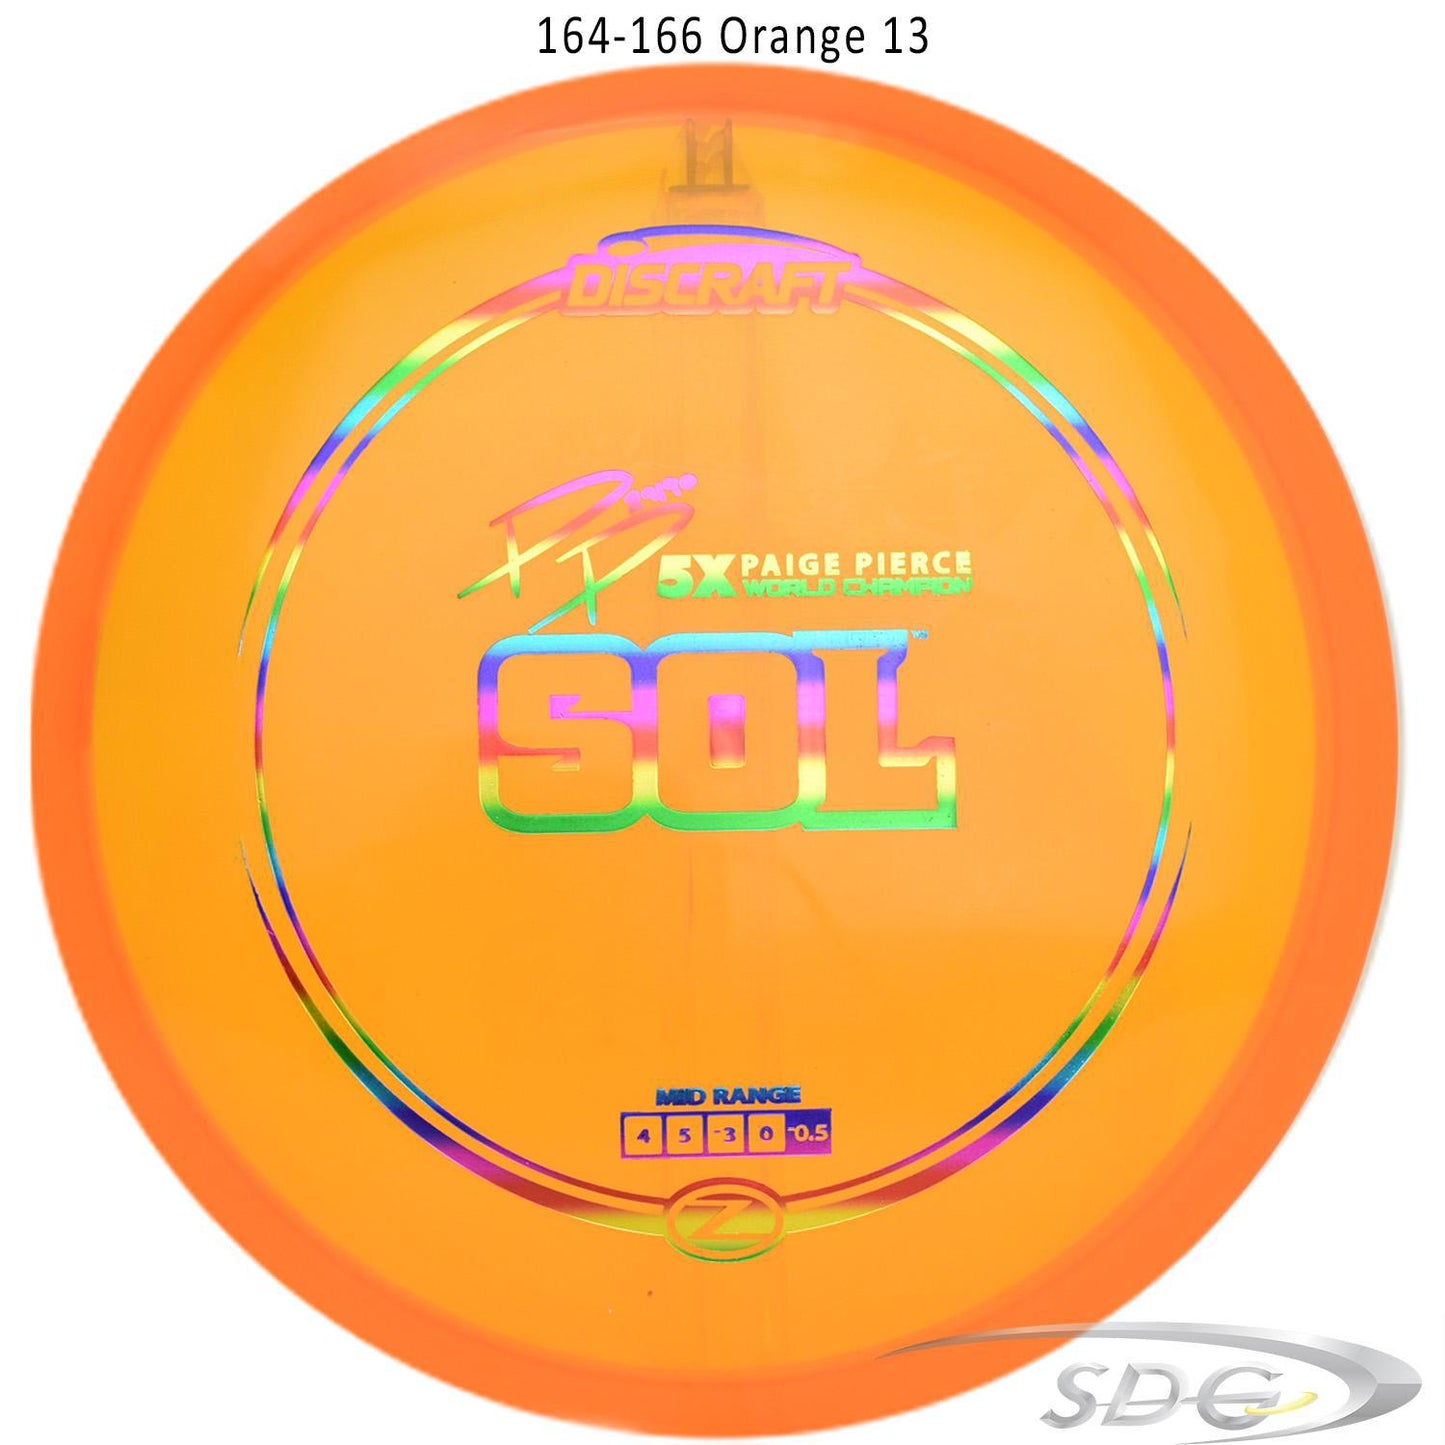 discraft-z-line-sol-paige-pierce-signature-disc-golf-mid-range-169-160-weights 164-166 Orange 13 